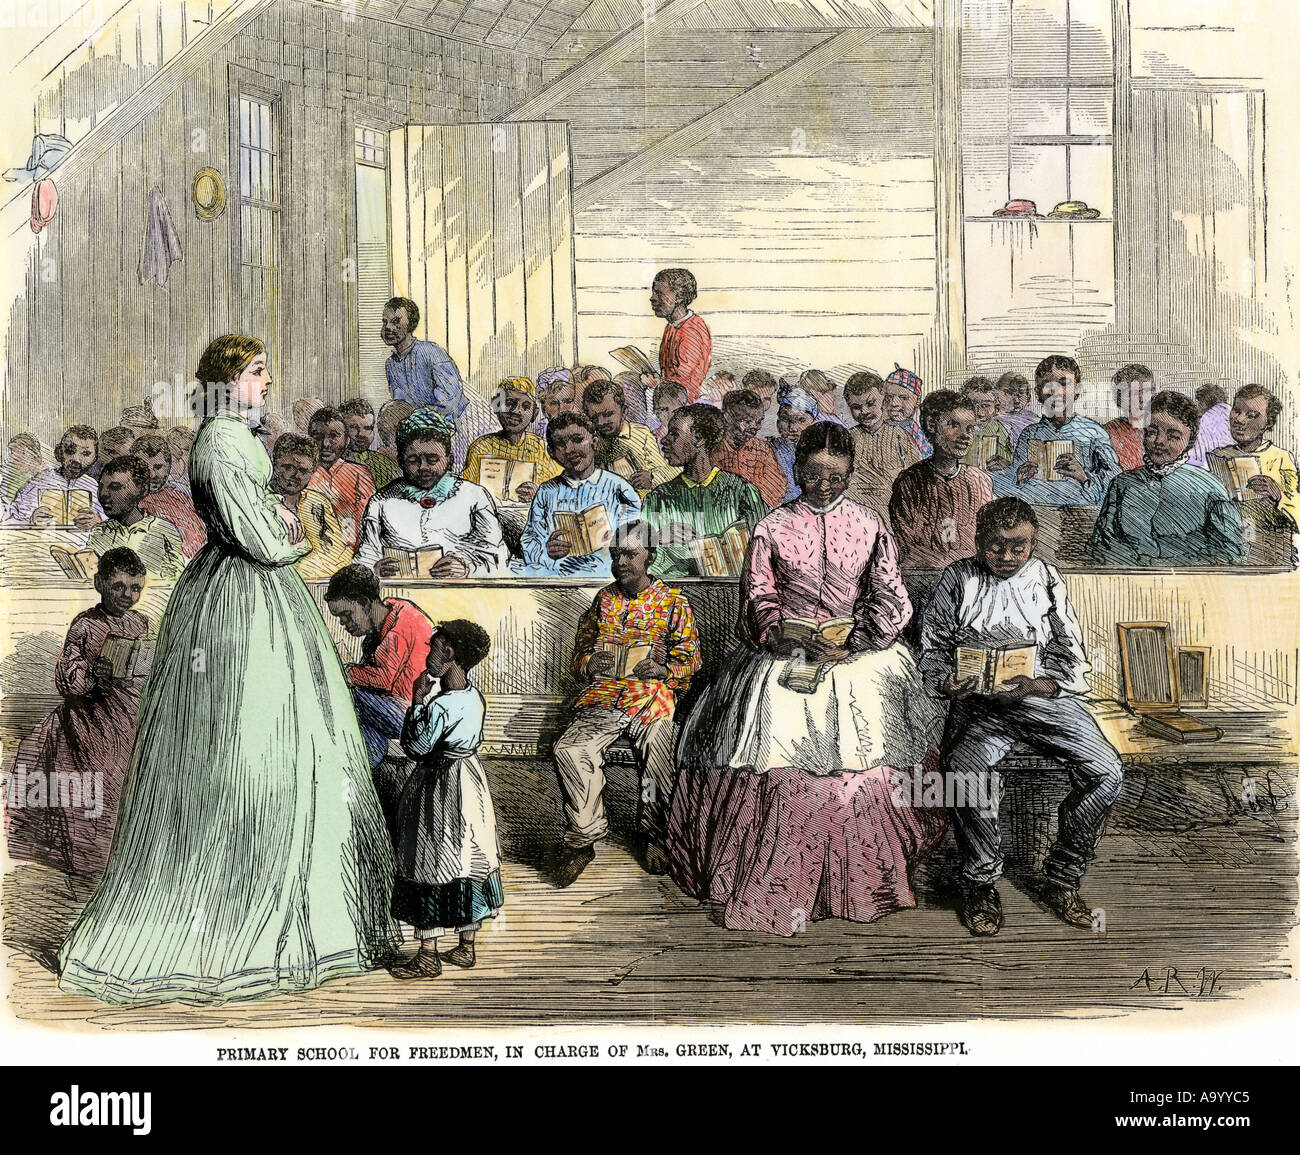 Escuela Primaria de libertos a cargo de la Sra. Green en Vicksburg Mississippi en 1866. Xilografía coloreada a mano Foto de stock